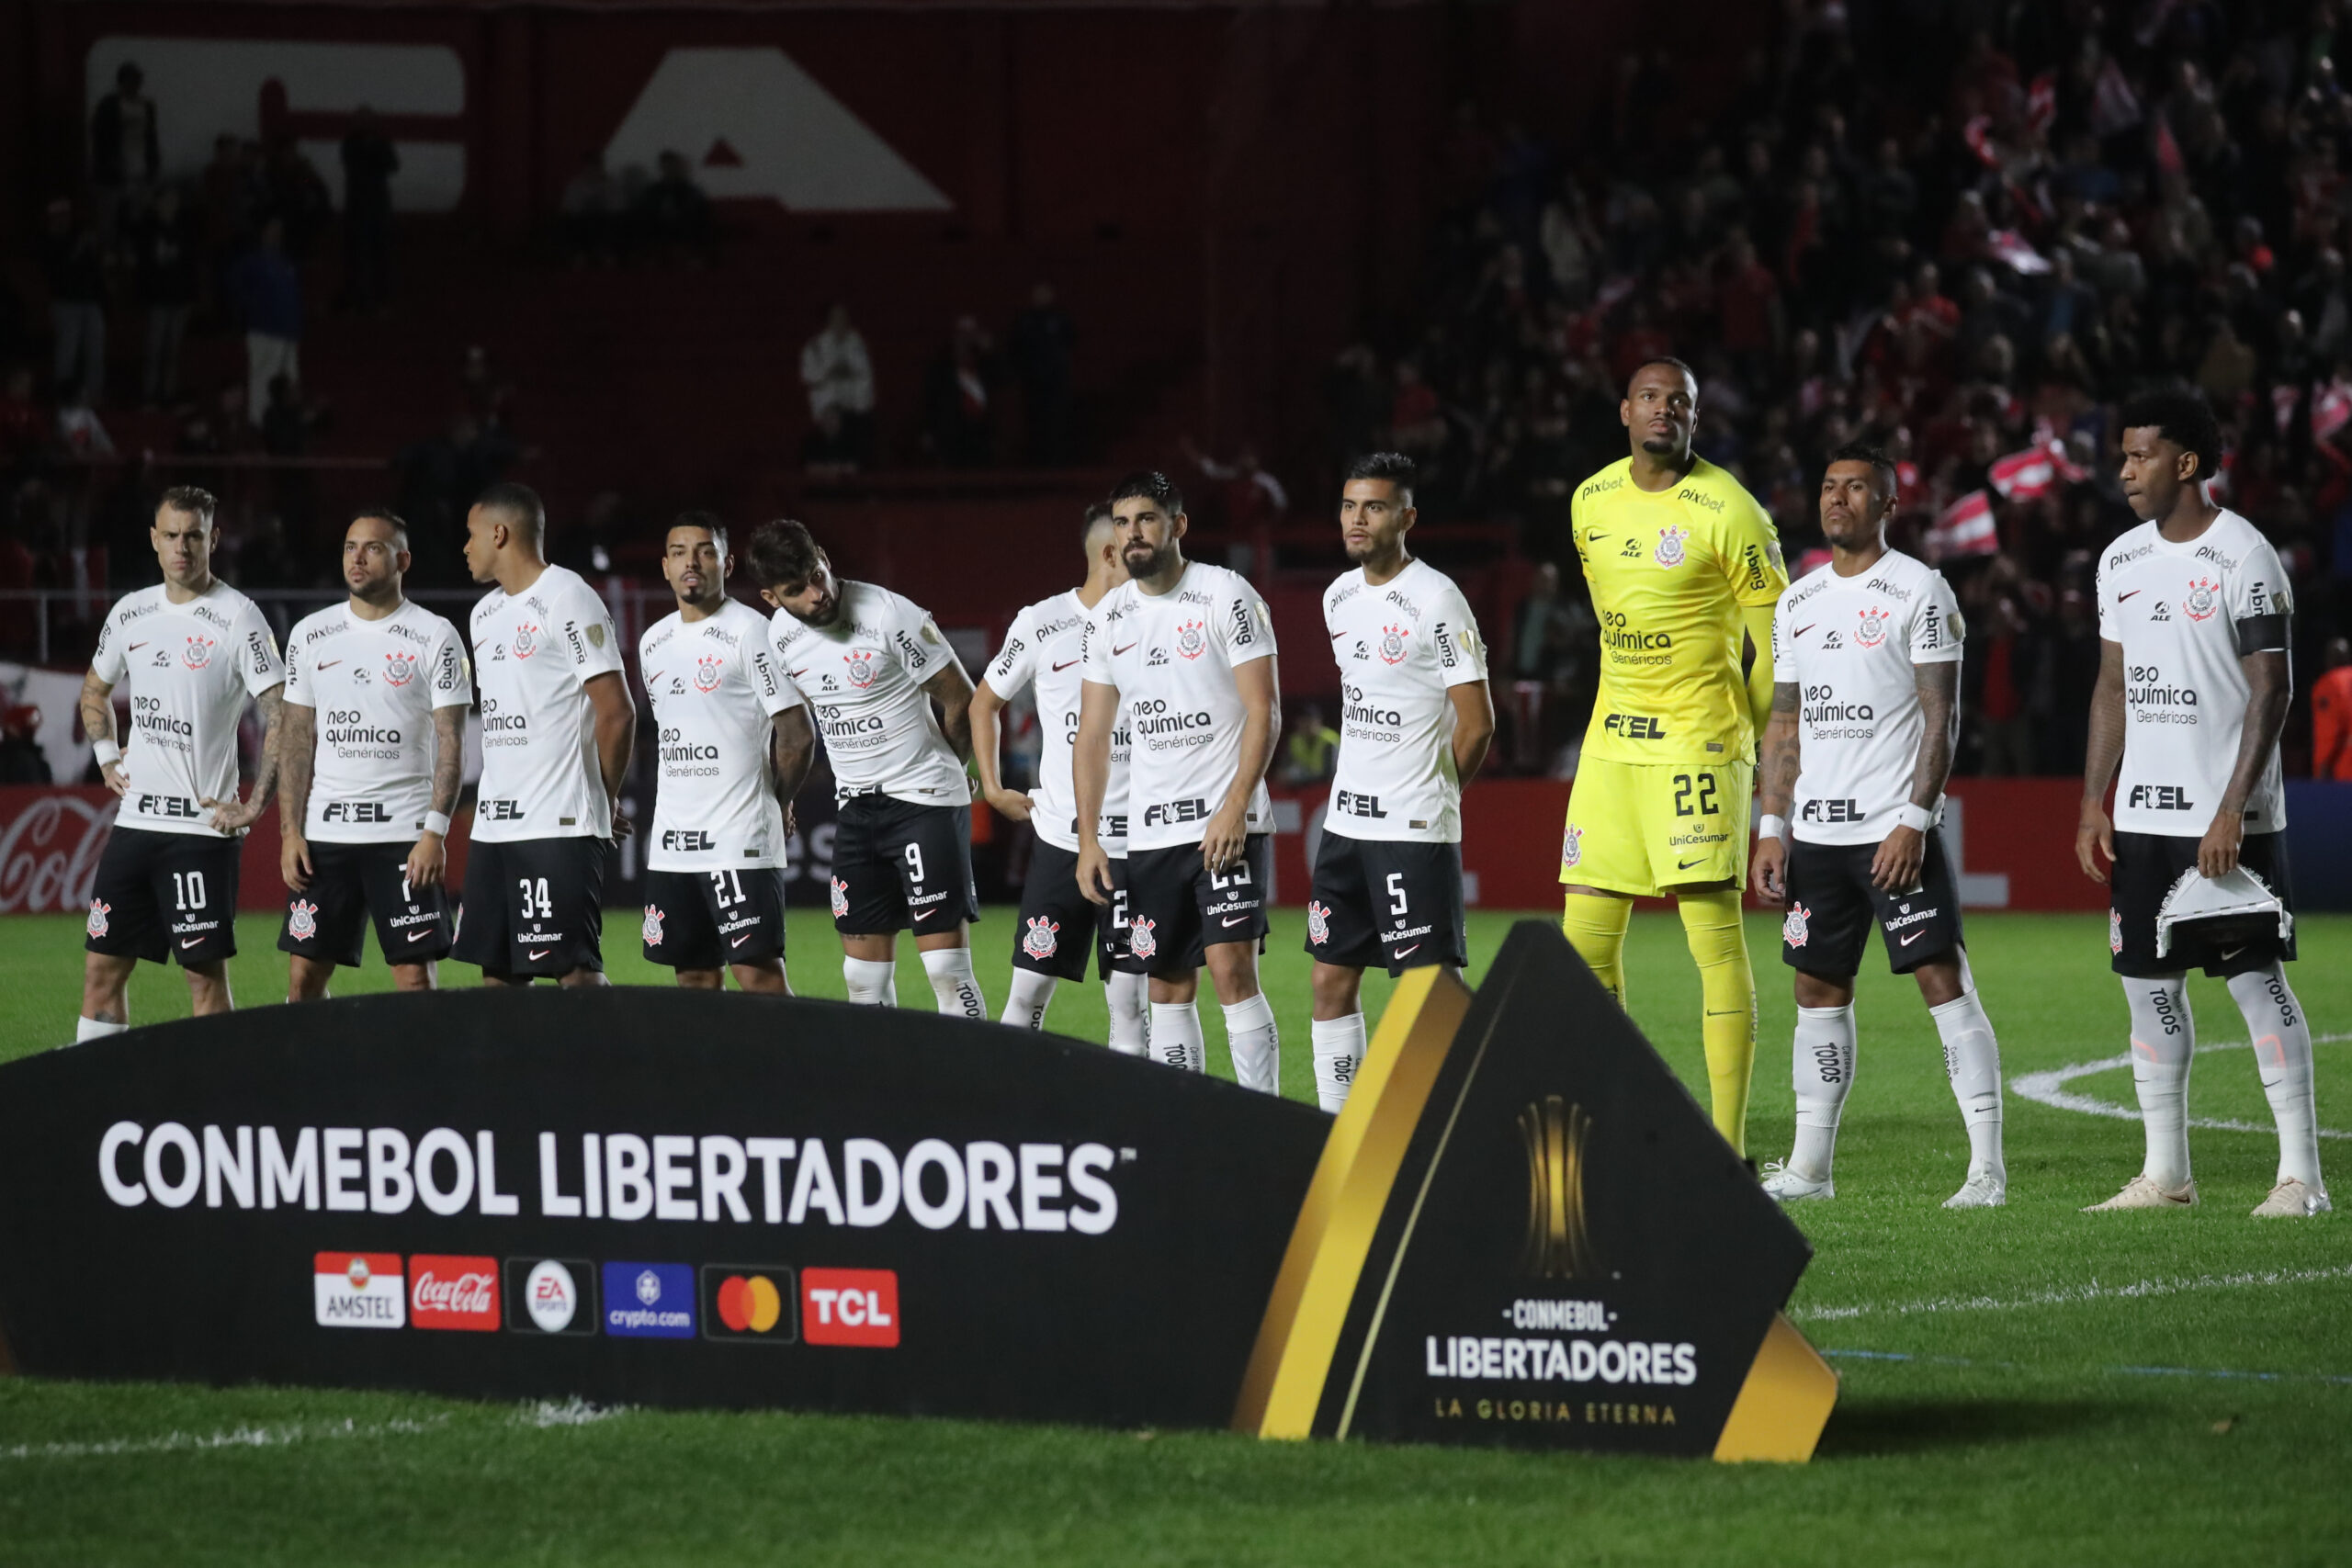 Corinthians encerra fase classificatória do NBB em 6º